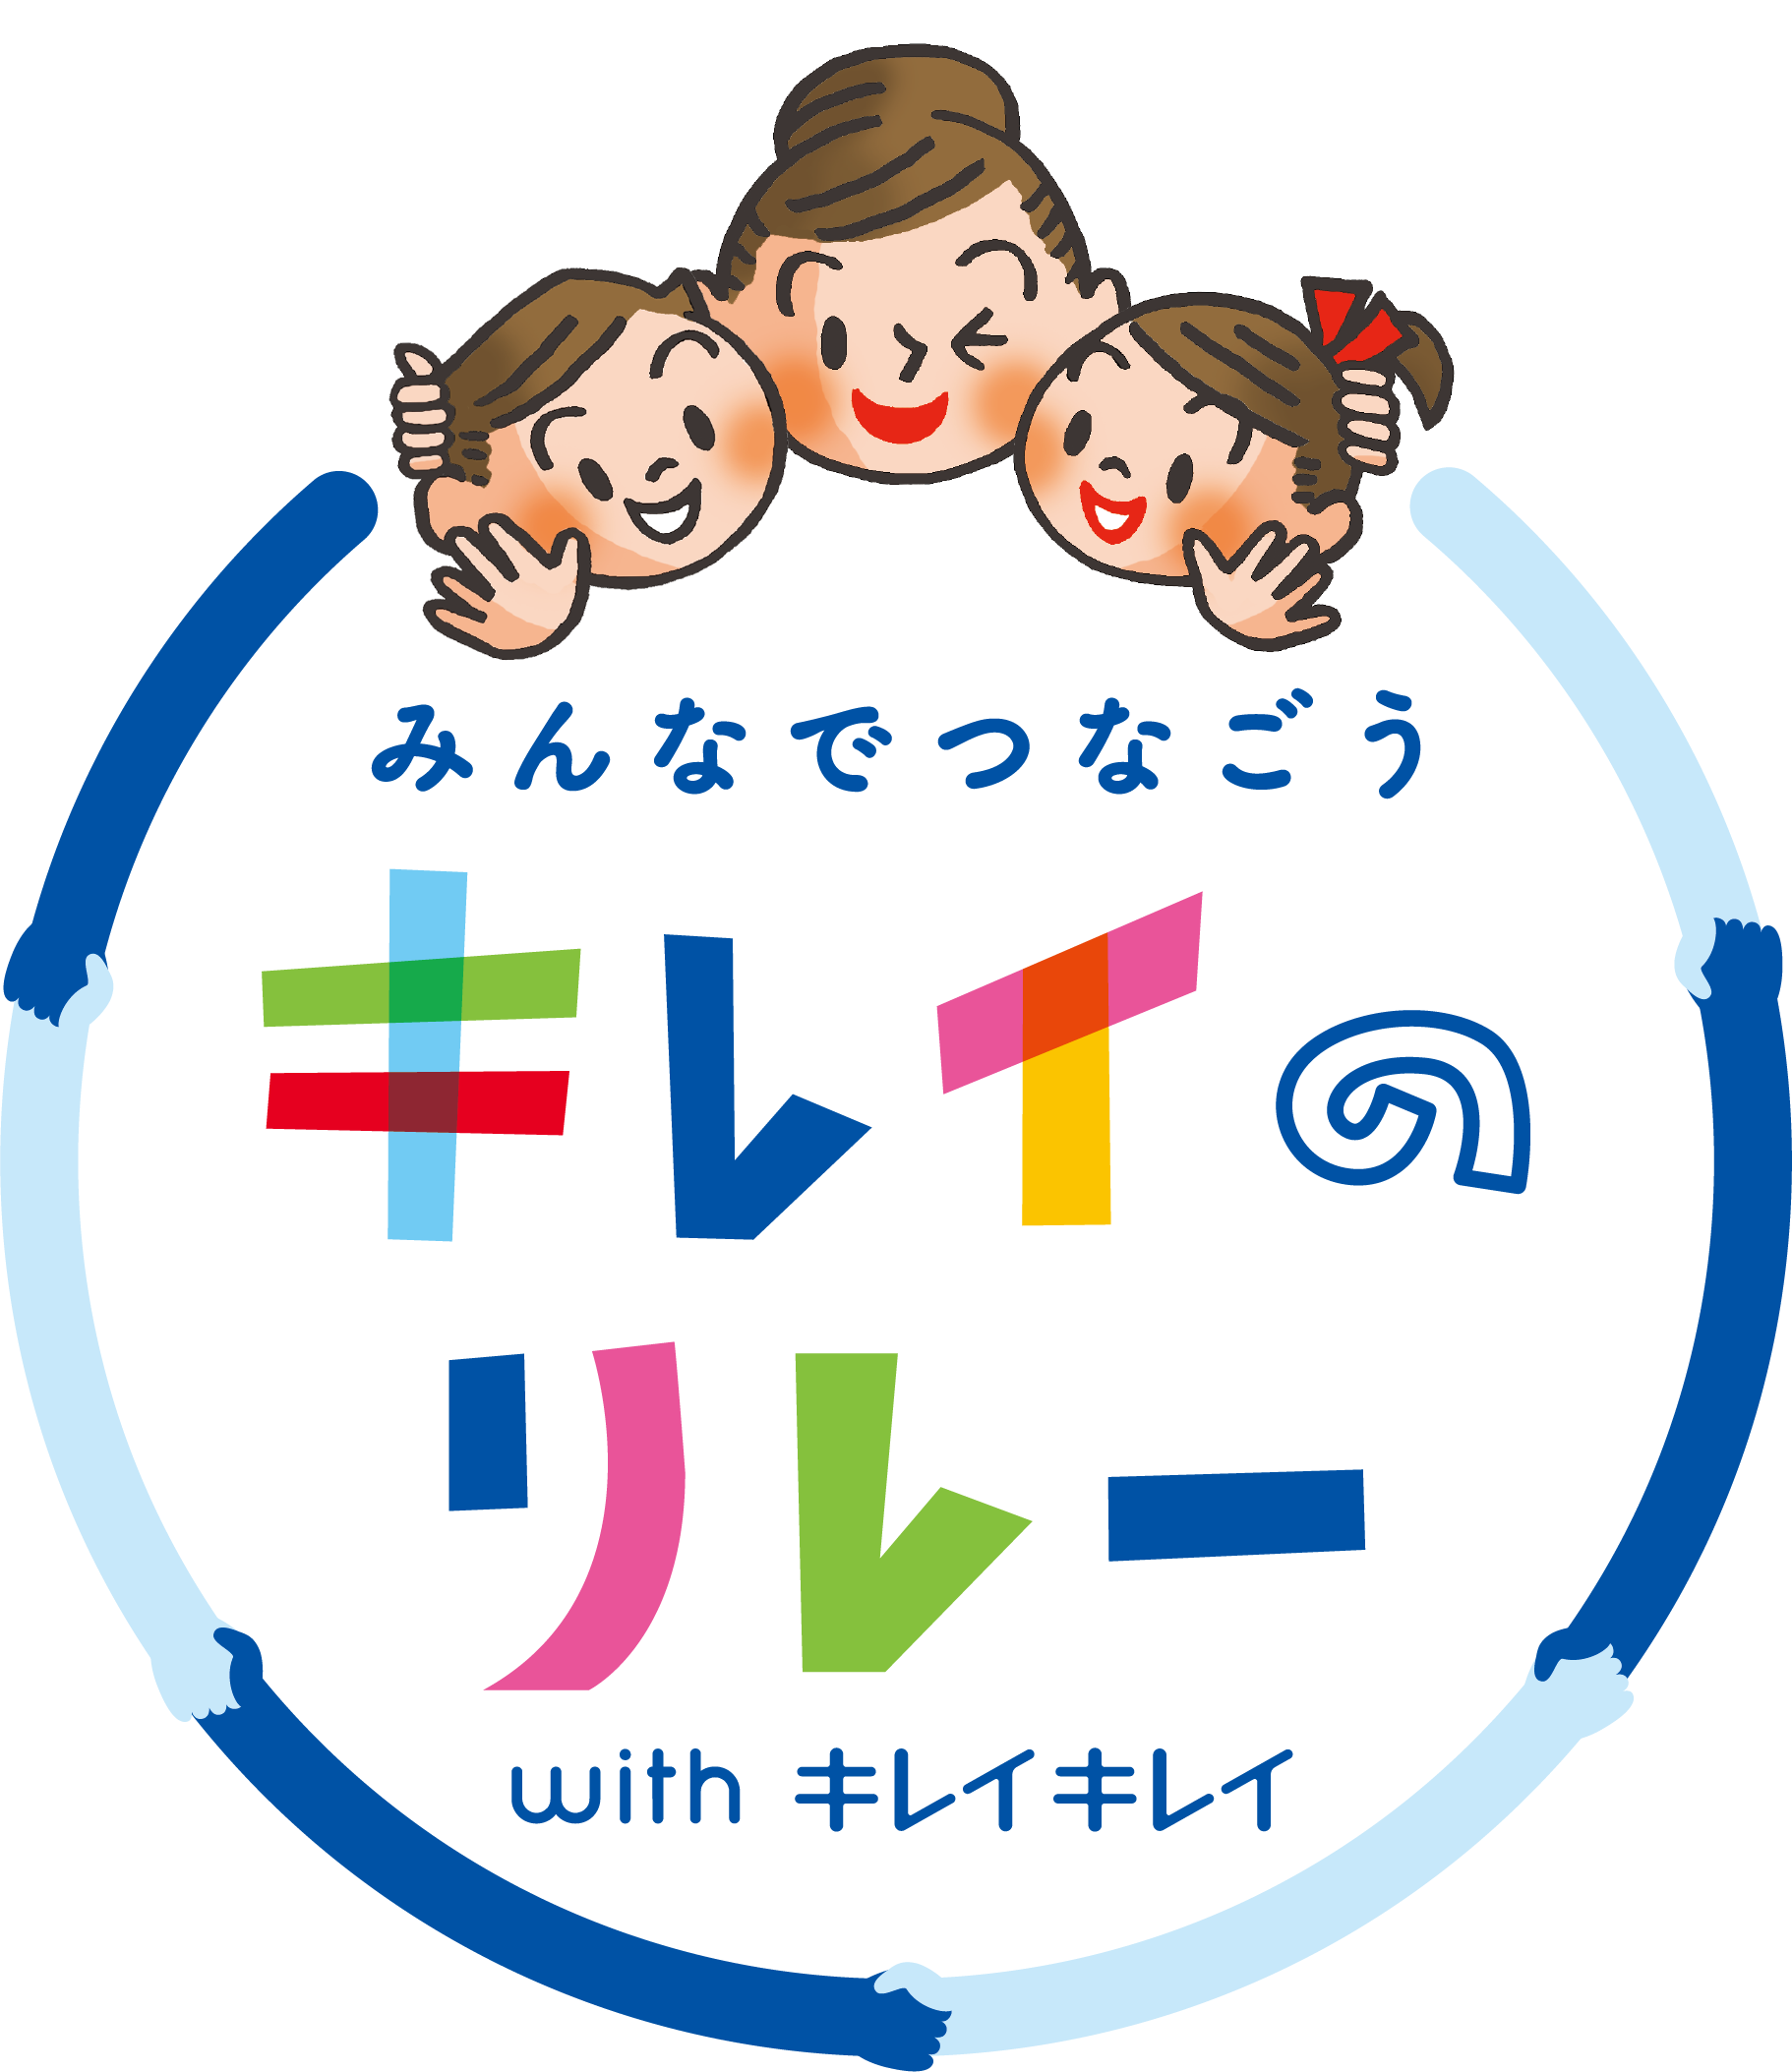 『キレイキレイ』ブランドが清潔衛生環境づくりを支援　
兵庫県川西市と連携協定を締結